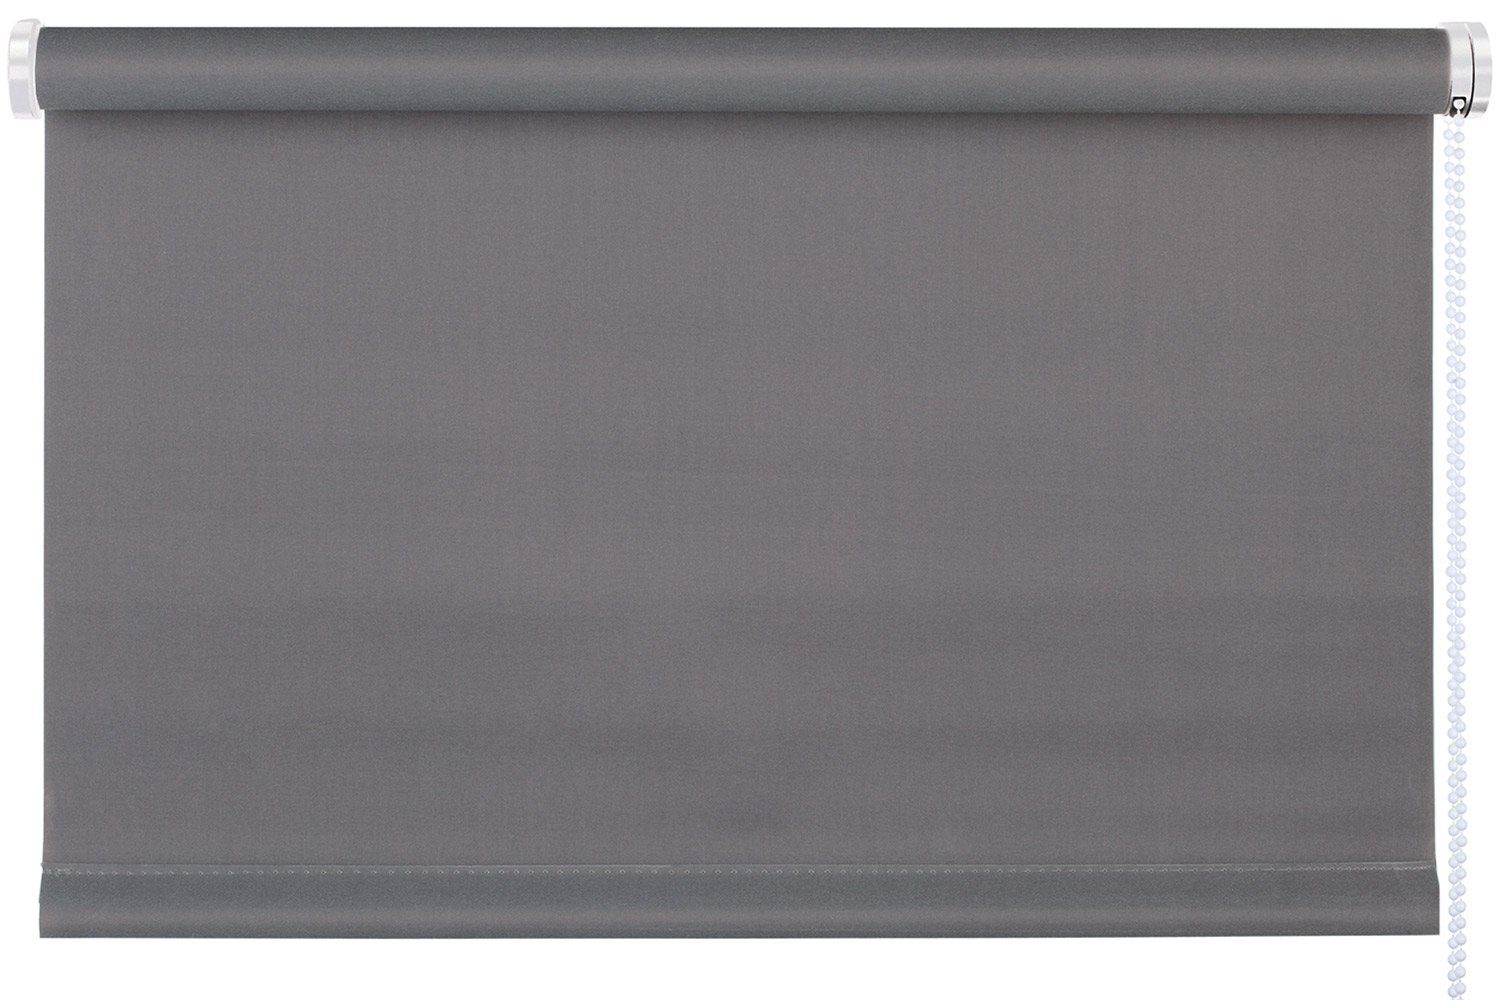 Rollo TREND, Design Rollo, Grau, B 100 x H 150 cm, mydeco, blickdicht, ohne Bohren, Klemmfix